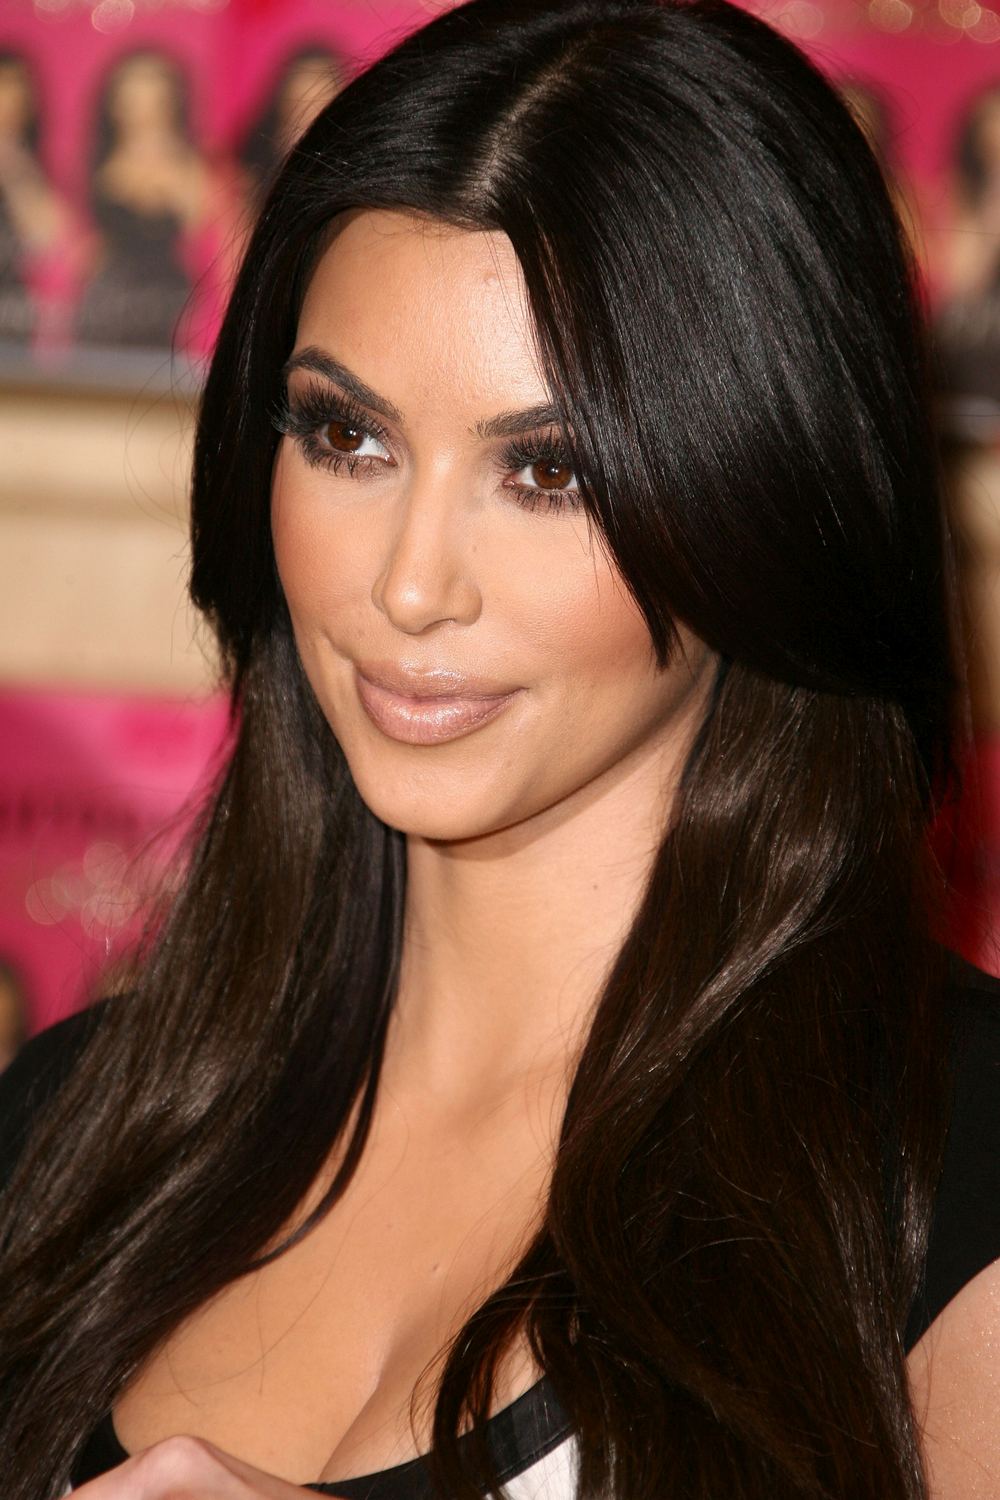 Kim, Kourtney, Khloe Kardashian podpisują książkę Kardashian Konfidental